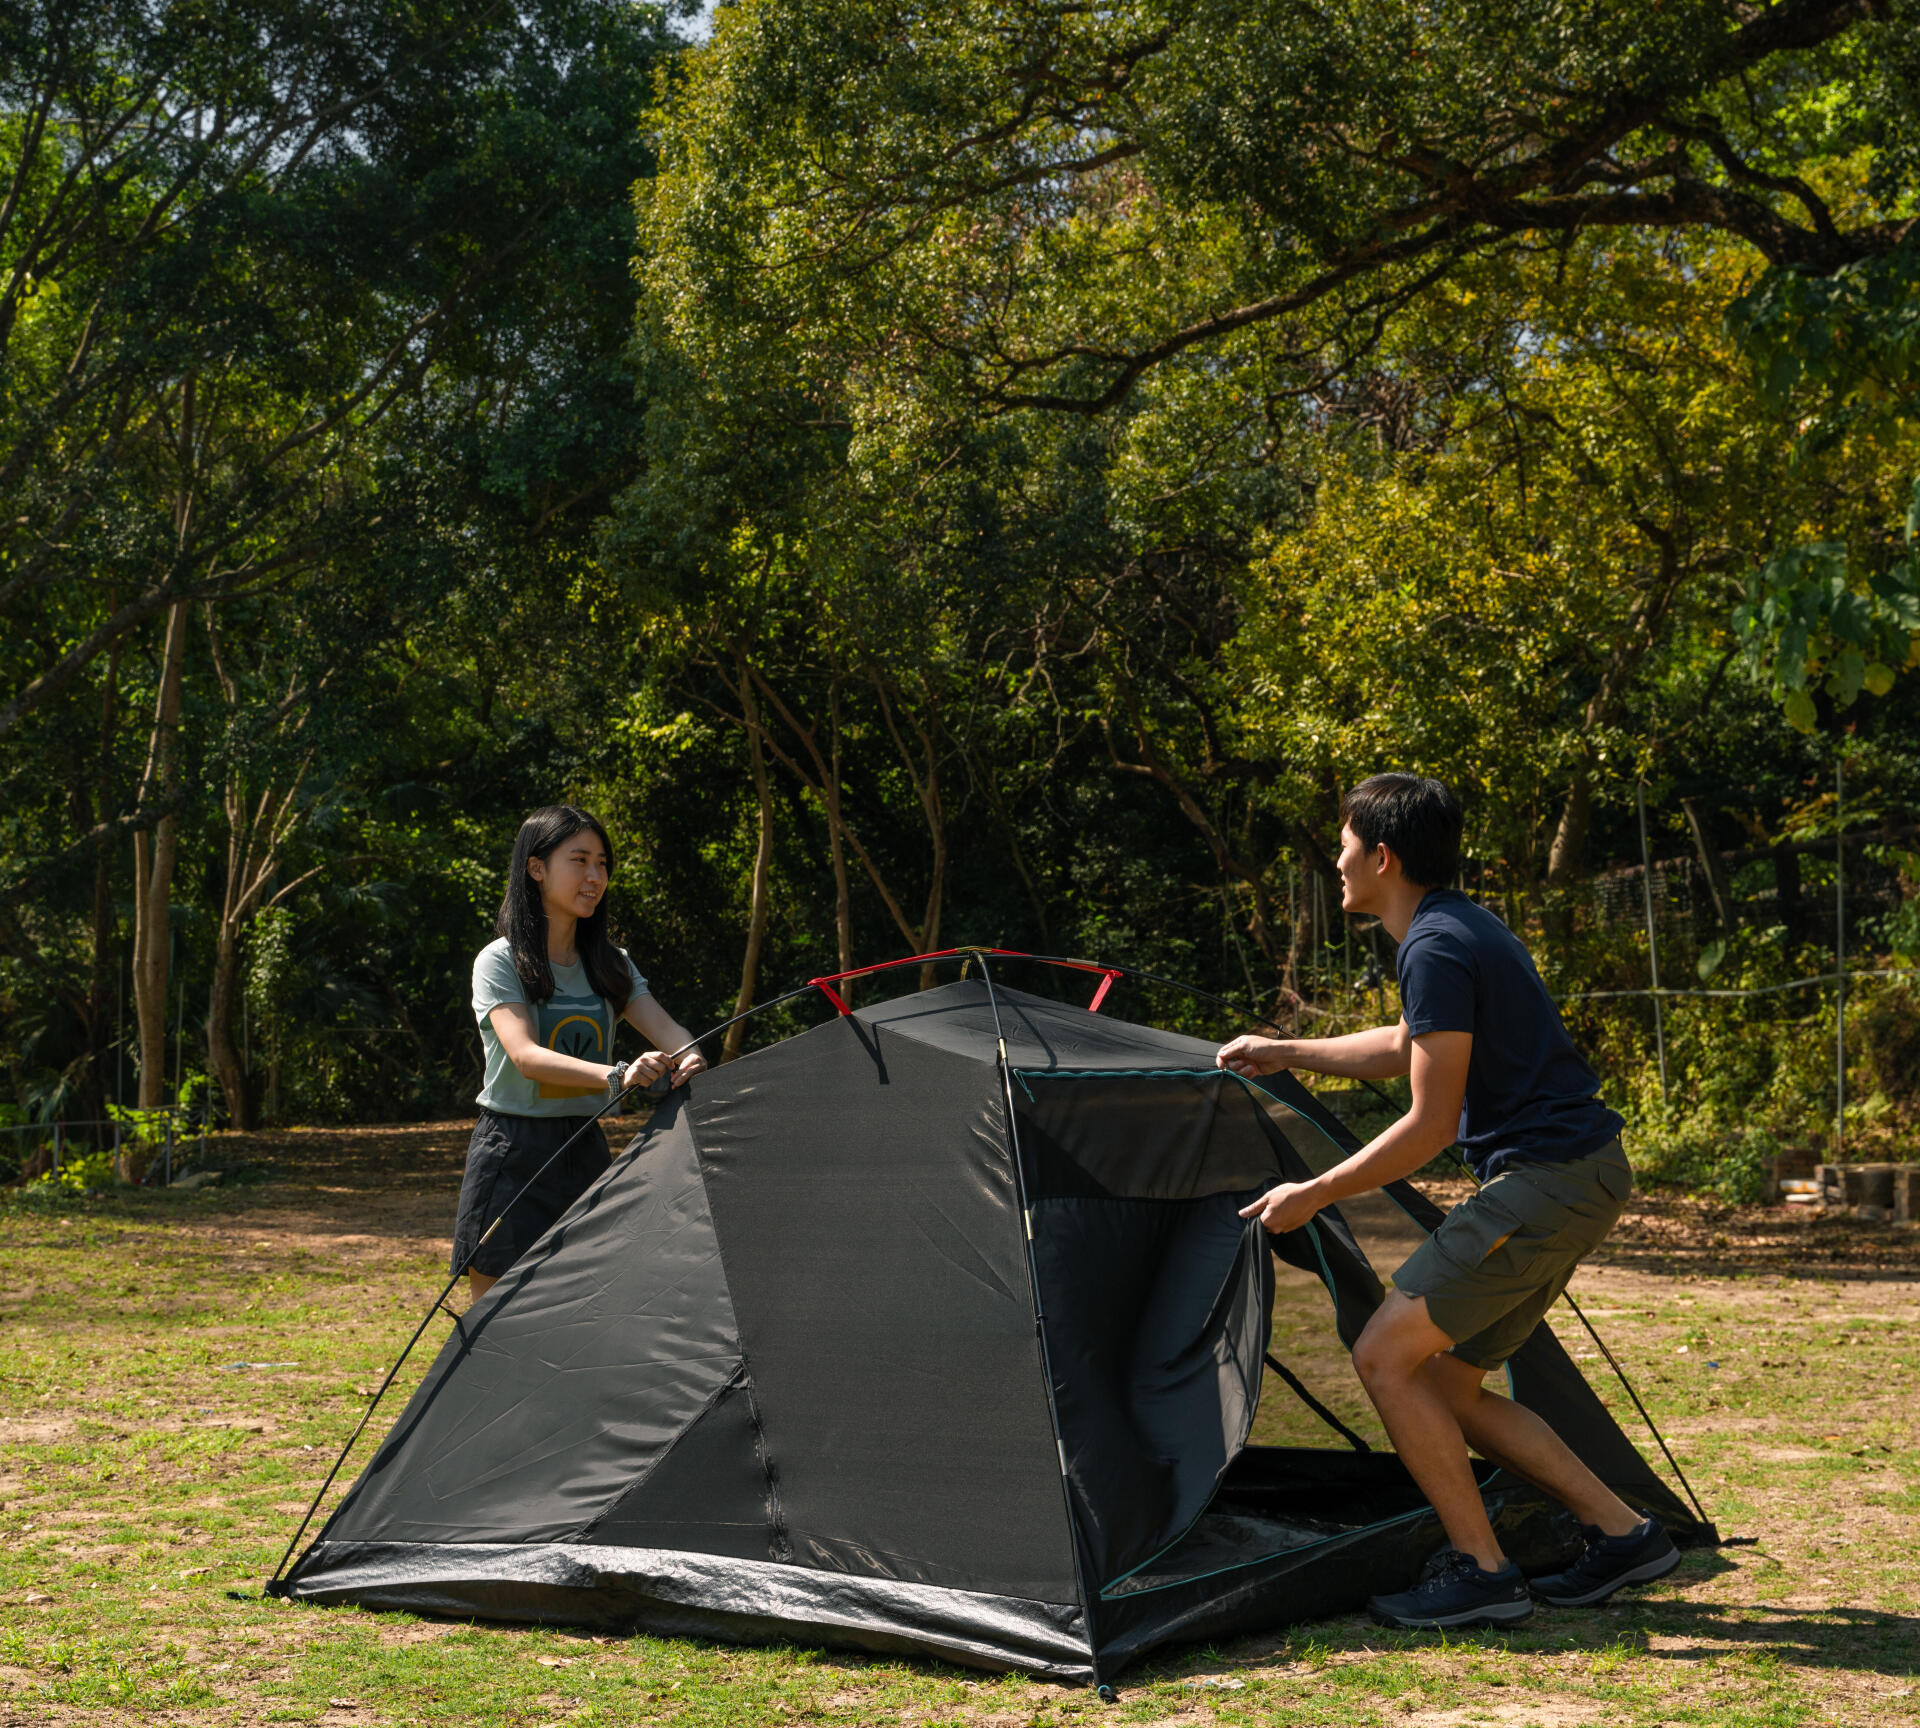 Comment choisir une tente de randonnée ?